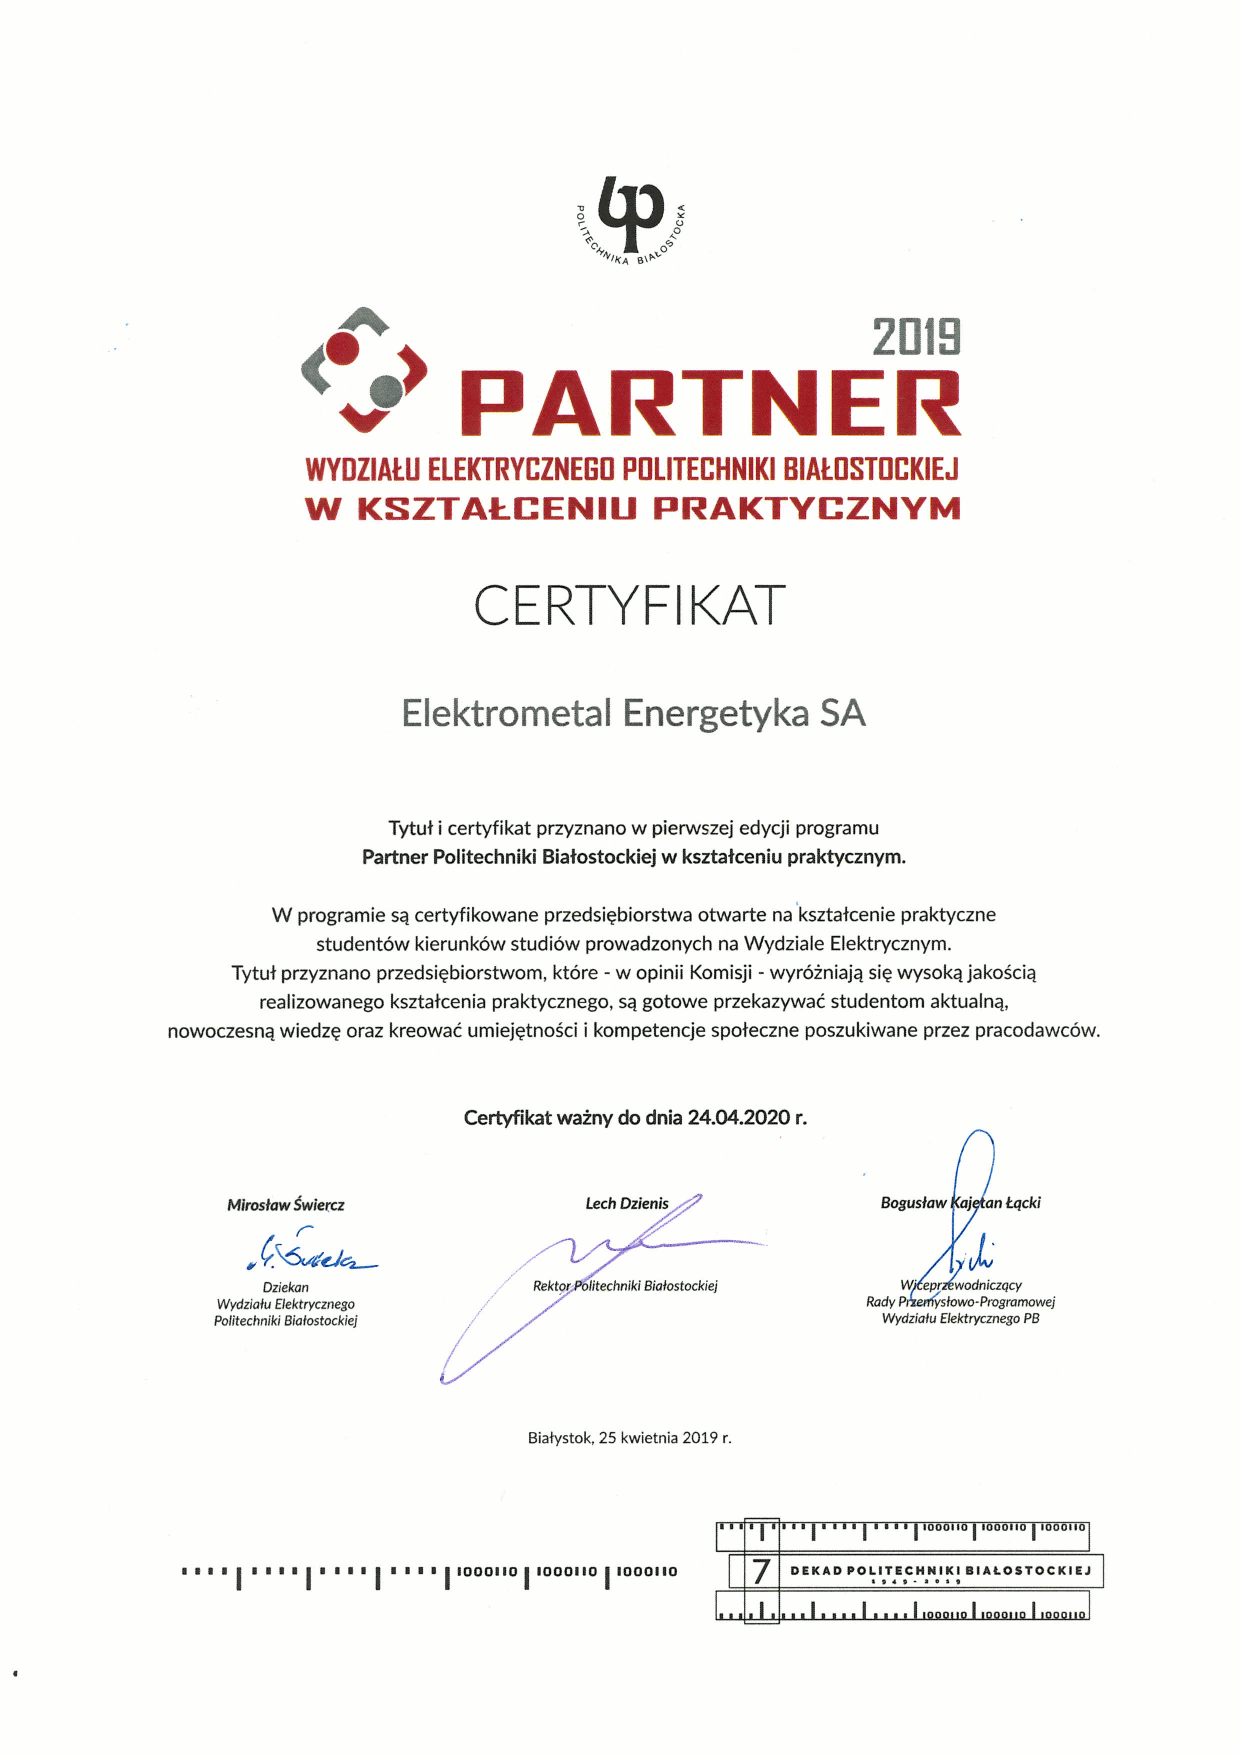 Certyfikat Partnera w kształceniu praktycznym - Elektrometal Energetyka S.A.